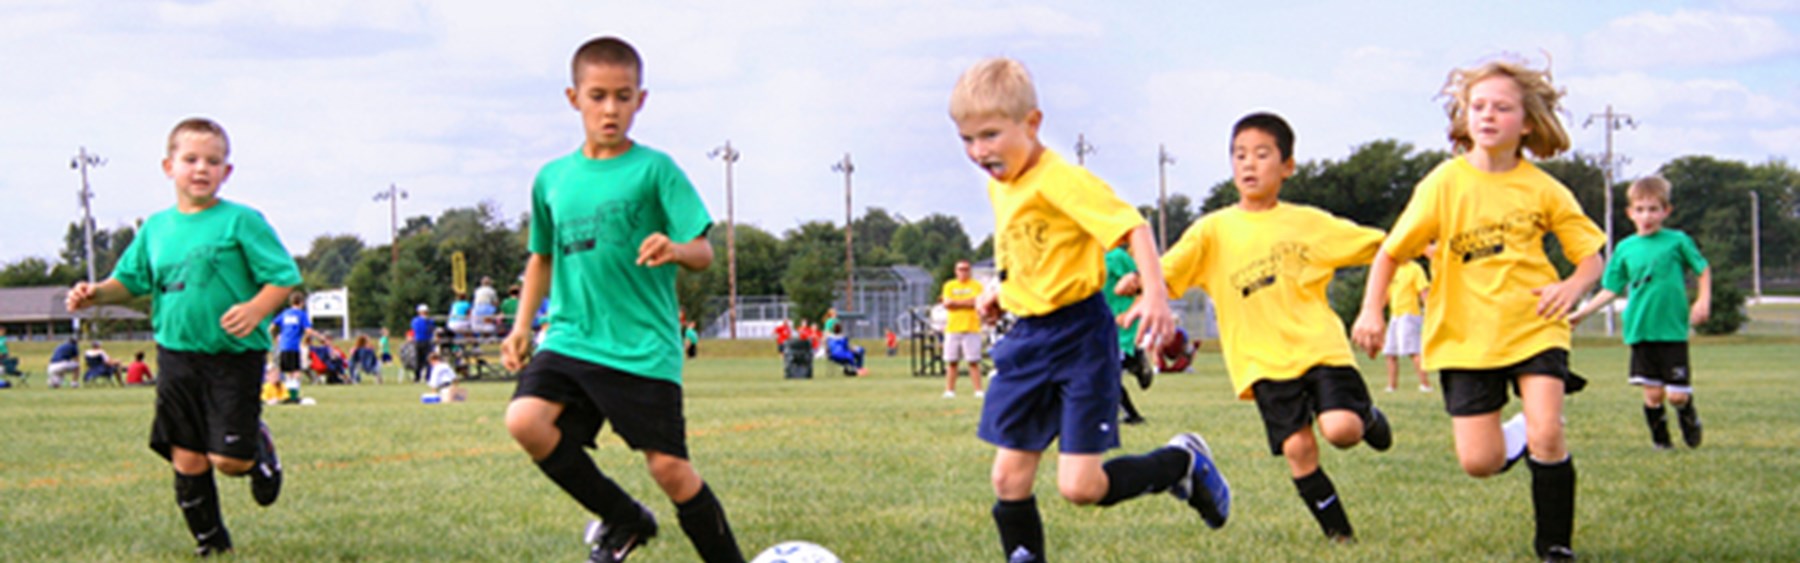 Børn, der spiller fodbold. Nogle af børnene har grønne trøjer på, mens de andres trøjer er gule.